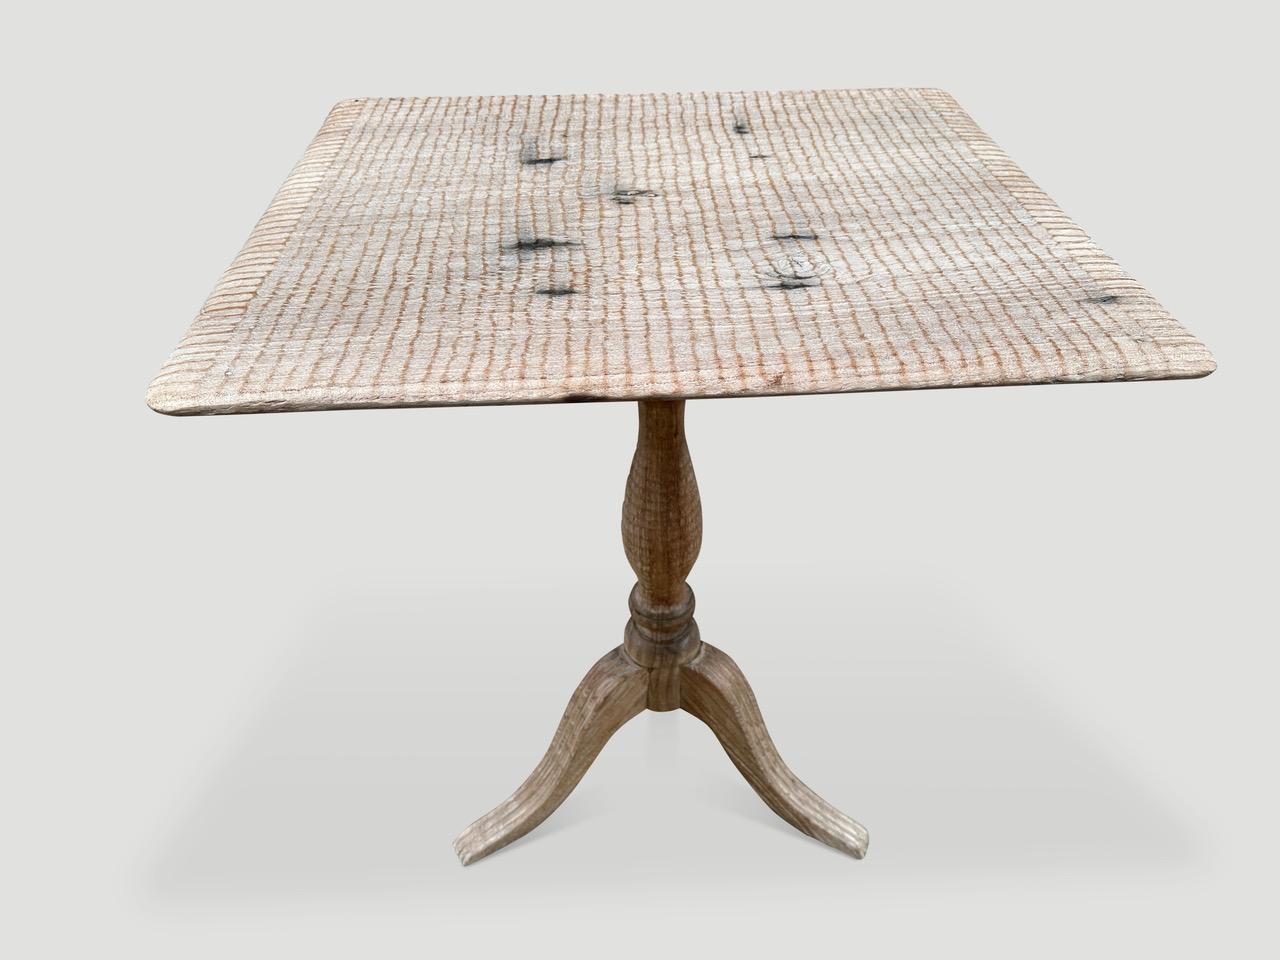 Impressionnants pieds sculptés à la main sur cette table d'appoint ou d'entrée ancienne. Le plateau est fabriqué à partir d'une seule pièce de bois de teck et nous y avons ajouté notre sculpture minimaliste unique. Finition laiteuse translucide